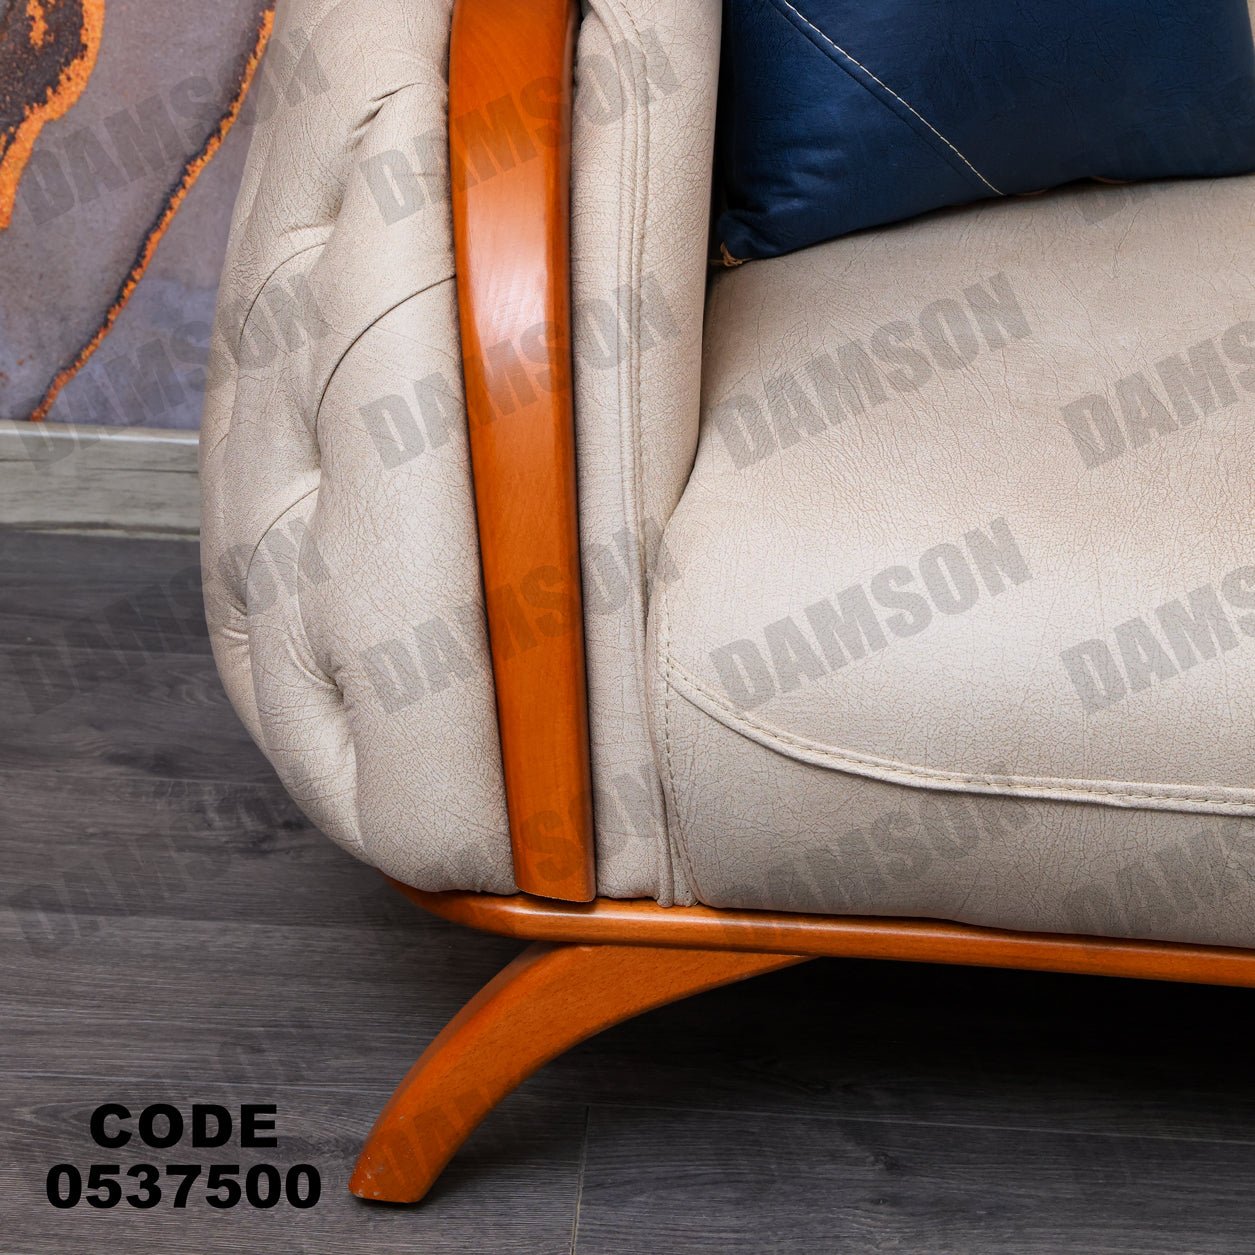 انترية 375 - Damson Furnitureانترية 375